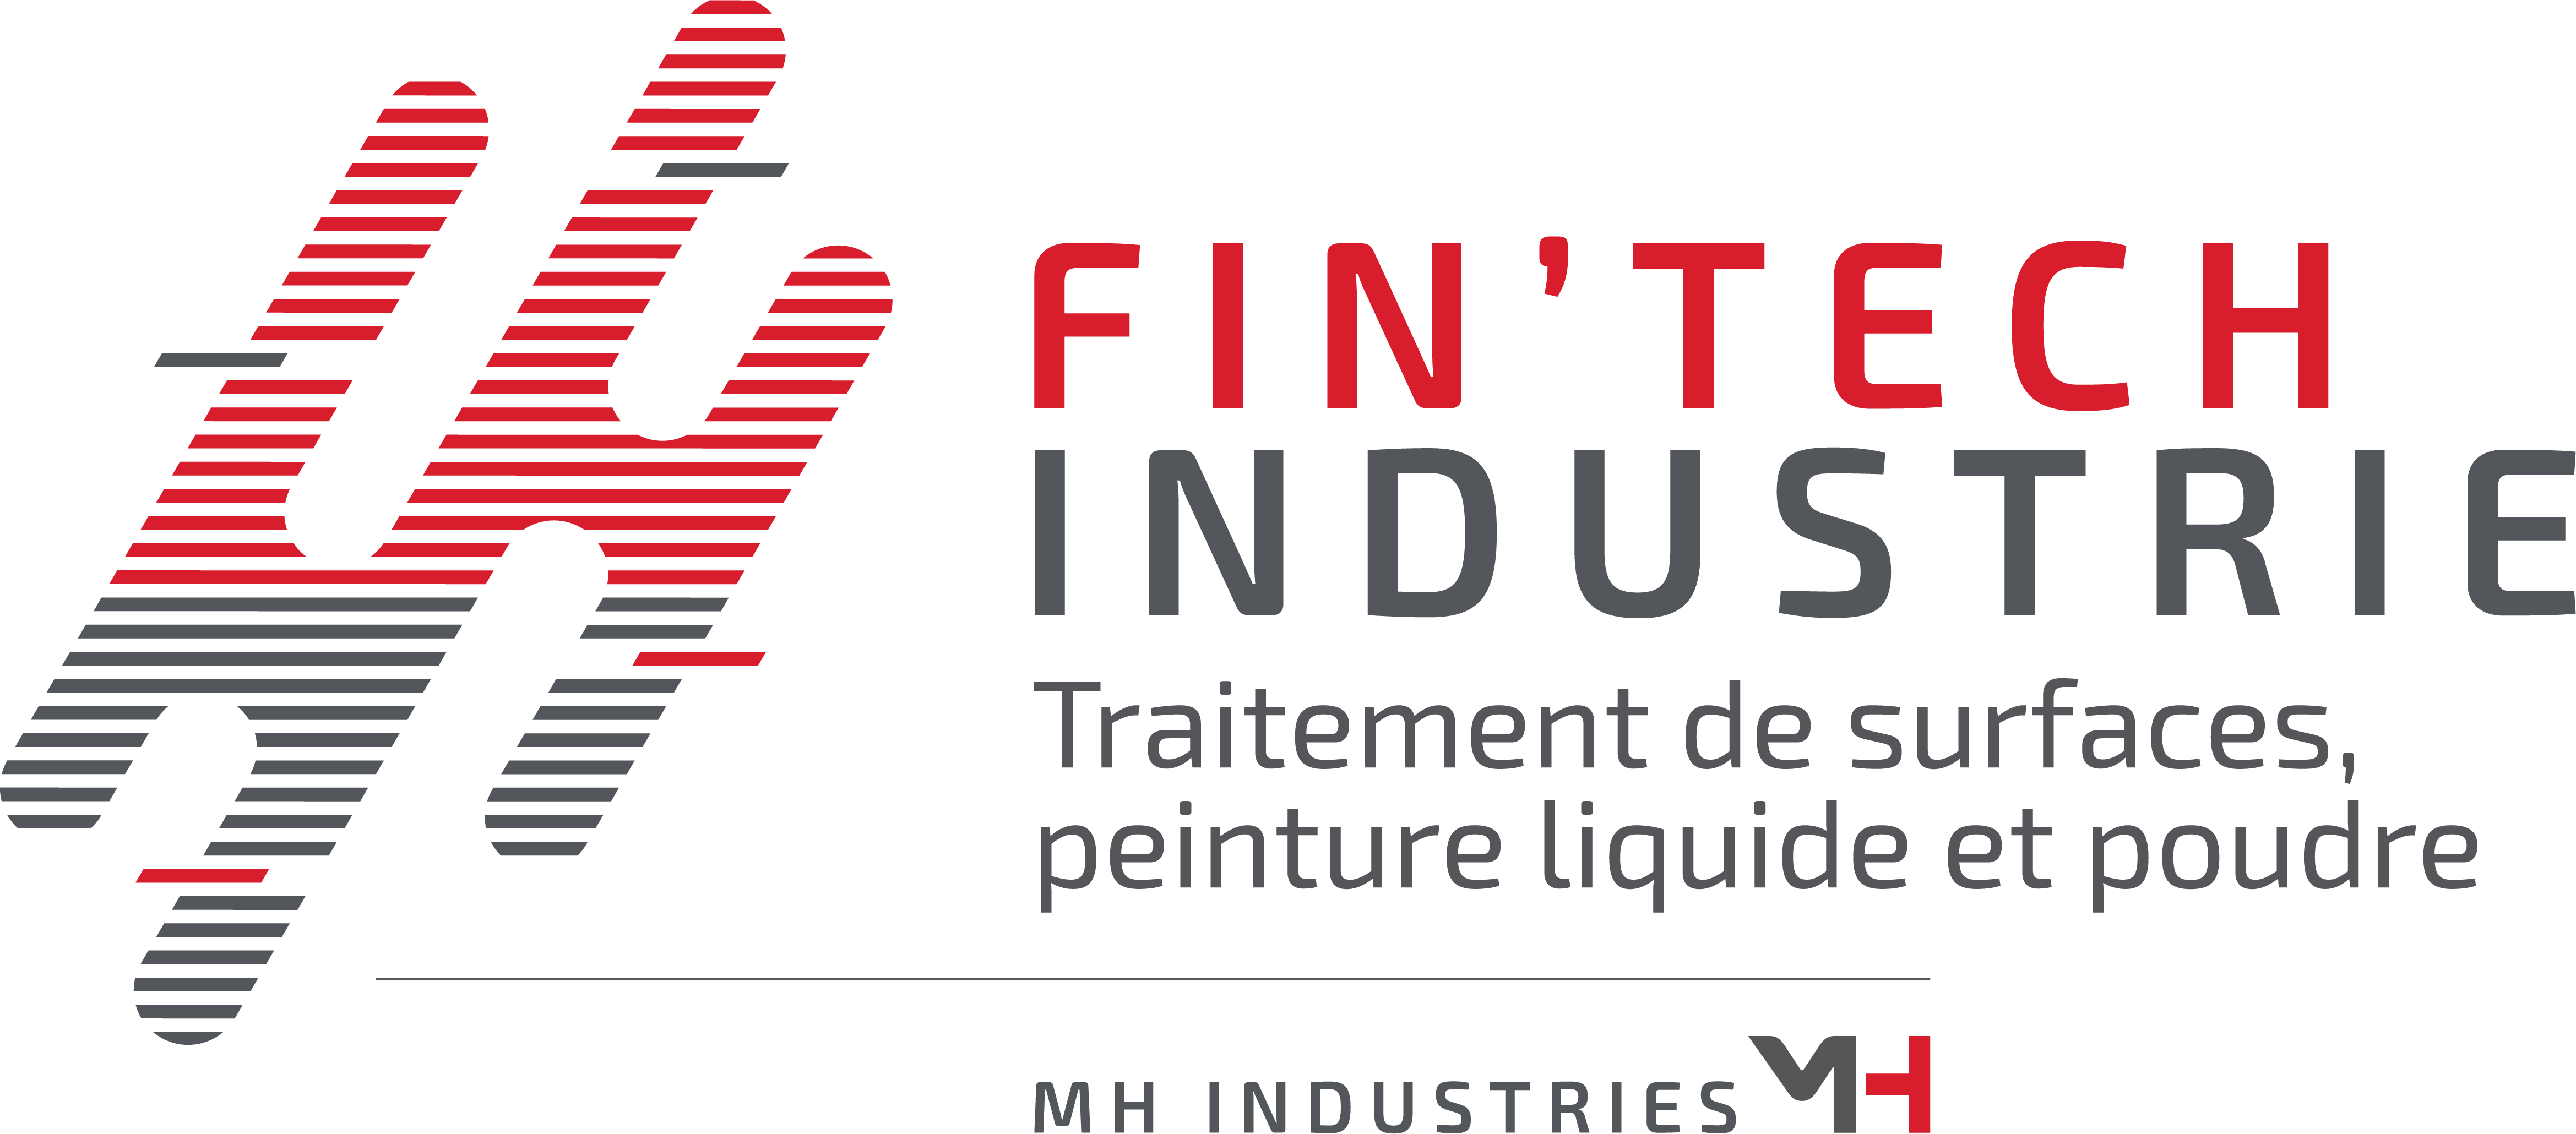 Logo Fintech Industrie Traitement de surfaces peinture liquide et poudre